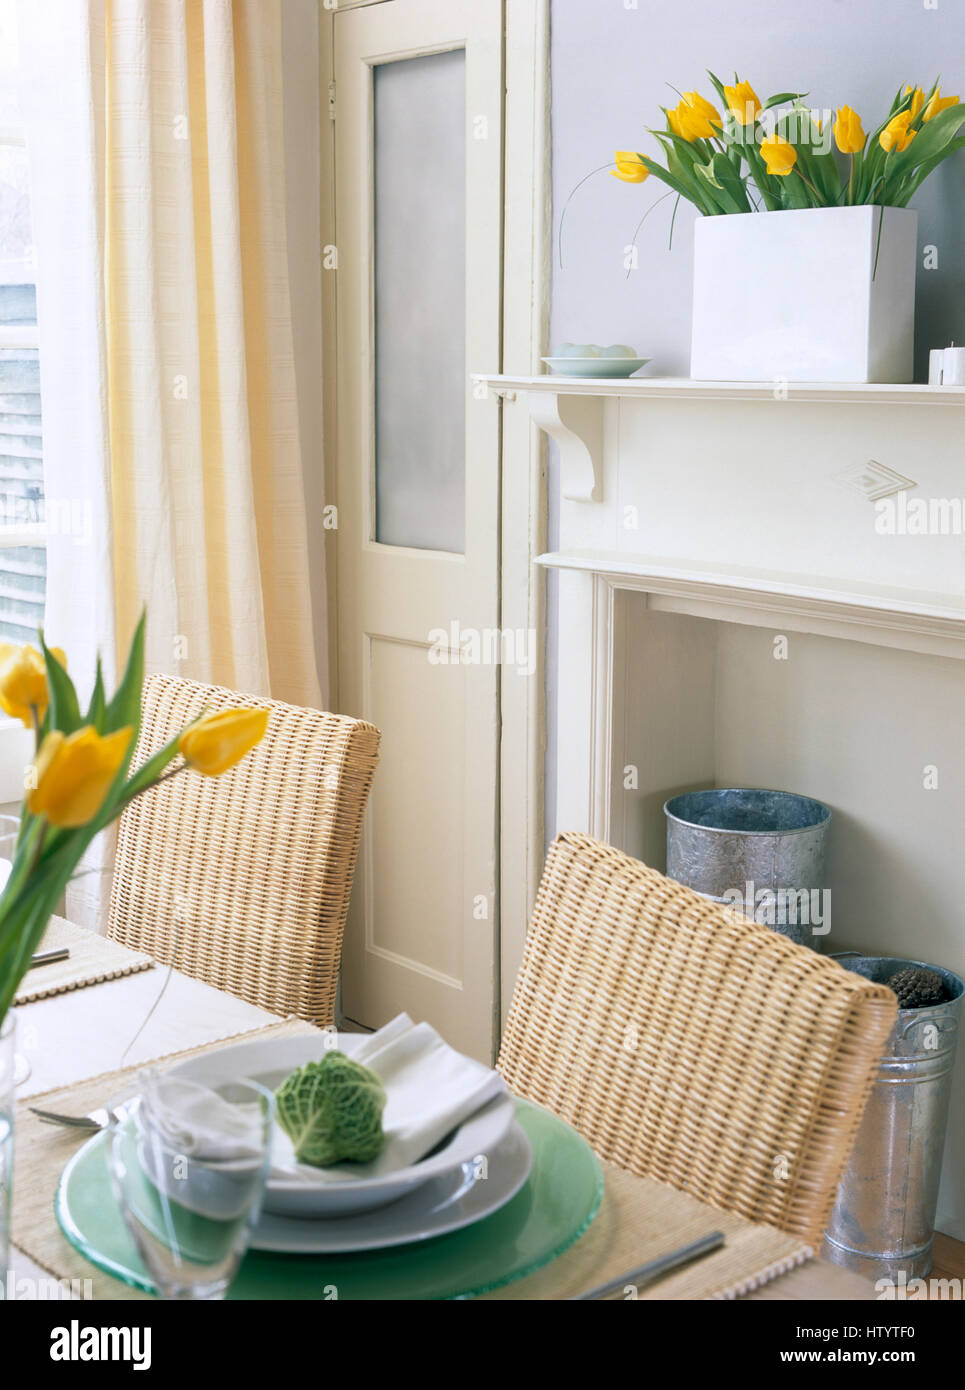 Chaises en osier retour à table avec le blanc et le vert de la vaisselle dans une économie avec salle à manger de style de rideaux à rayures jaune Banque D'Images